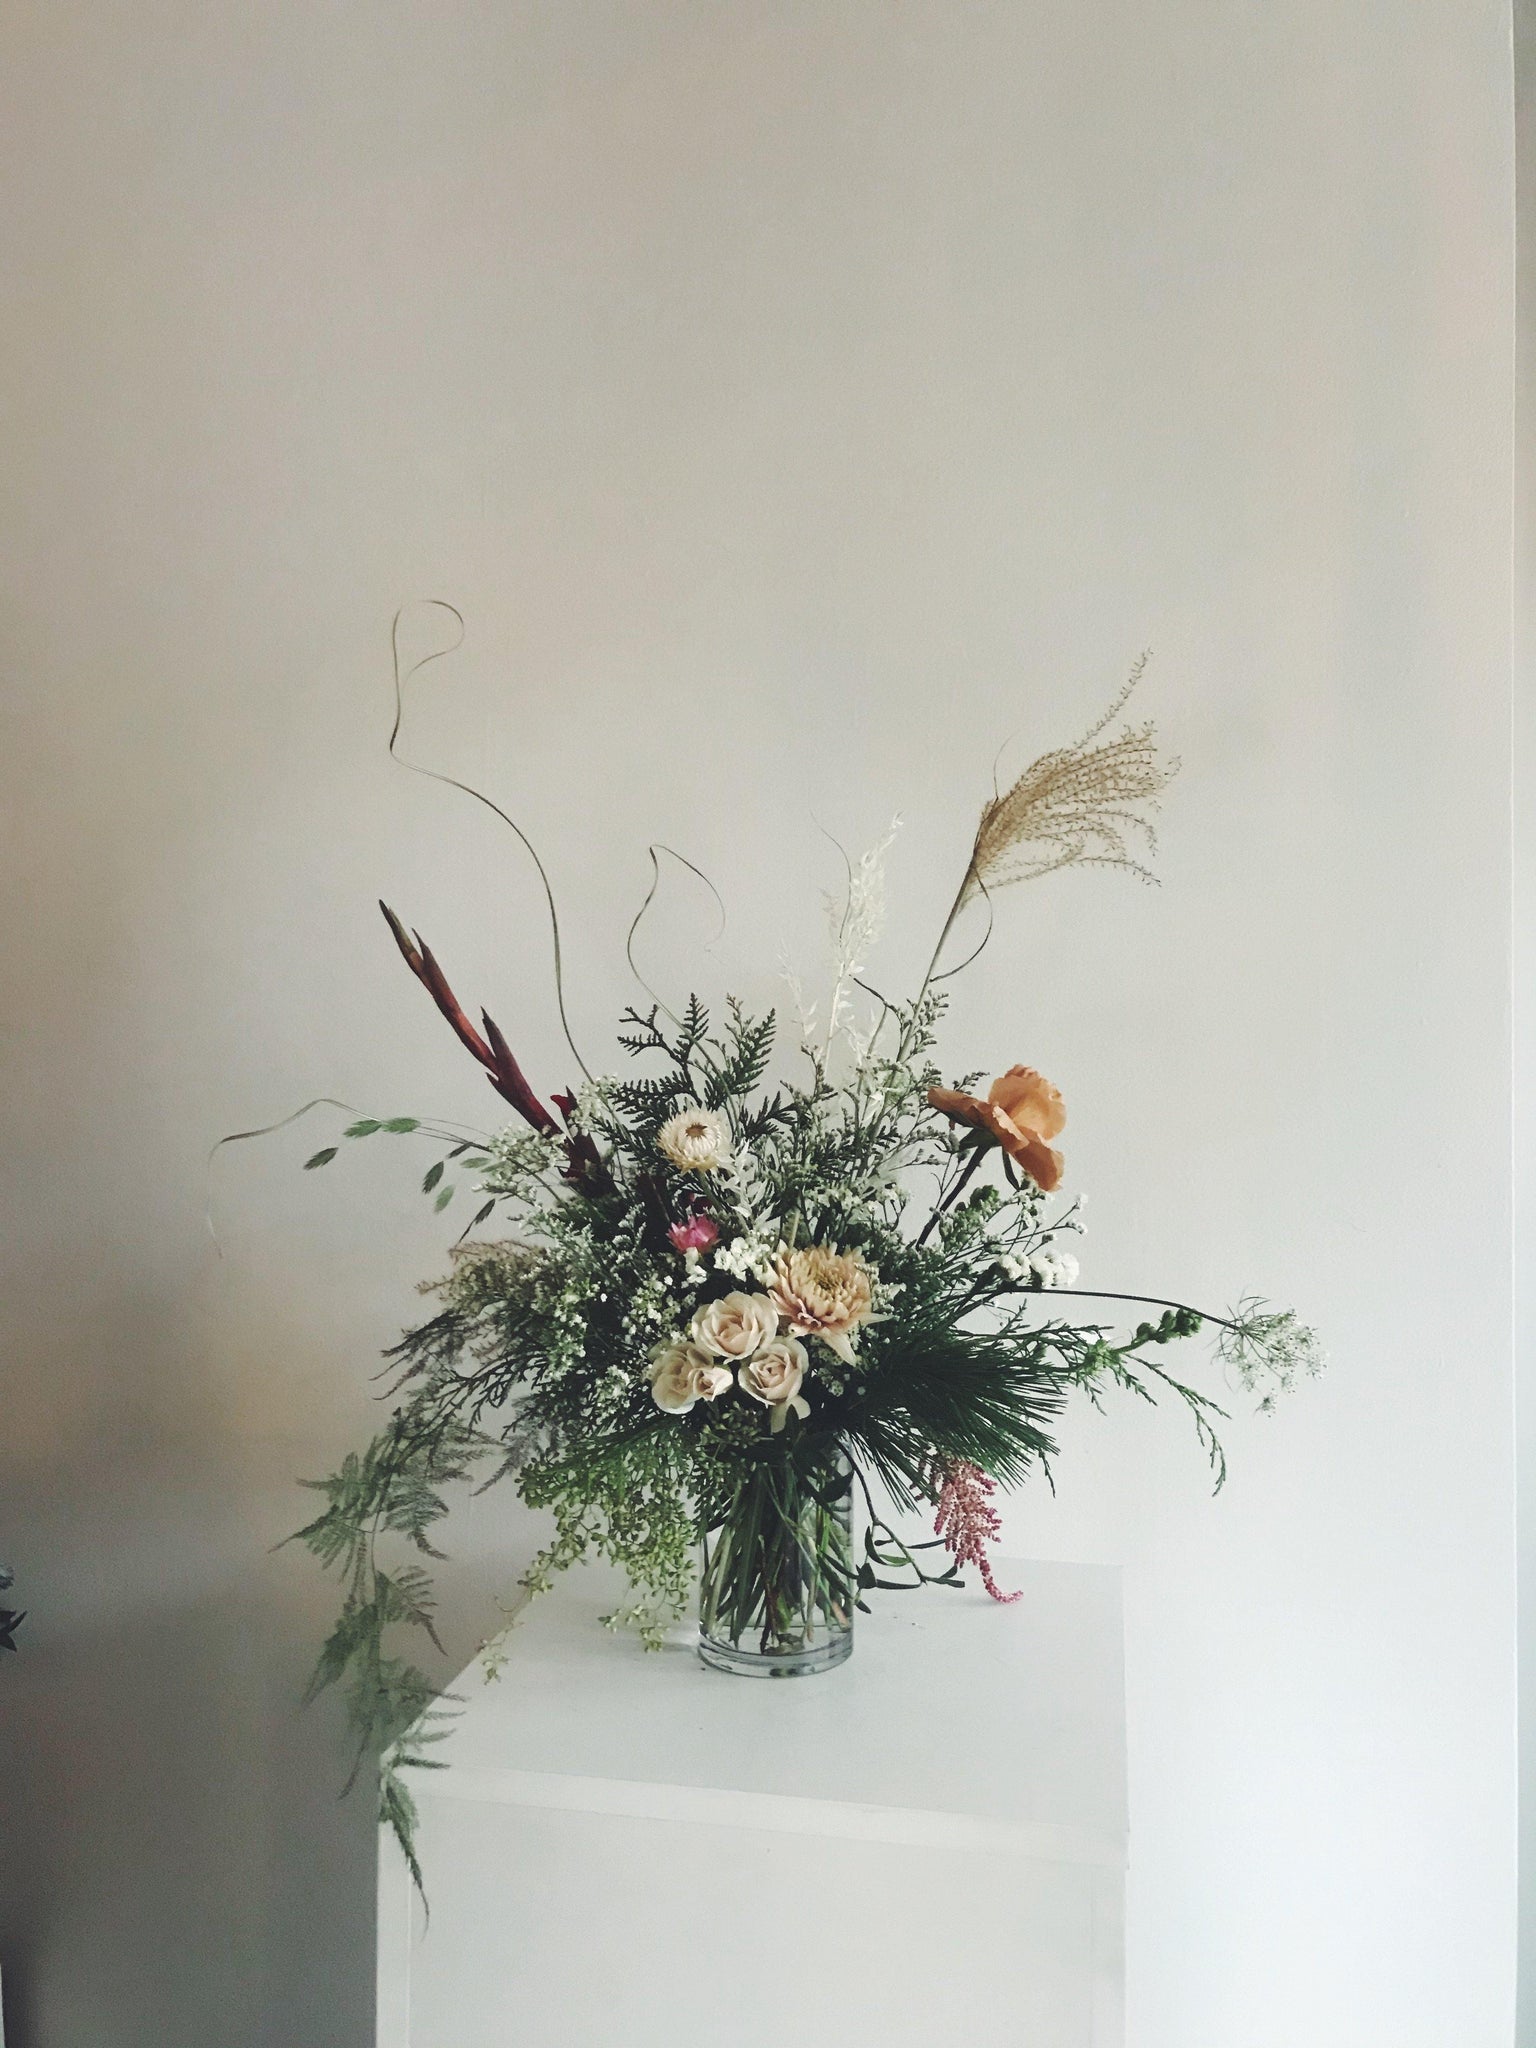 Arrangements - Holiday Centrepiece Arrangement - The Wild Bunch Florals - The Wild Bunch Florist - Vancouver Flower Shop Delivery